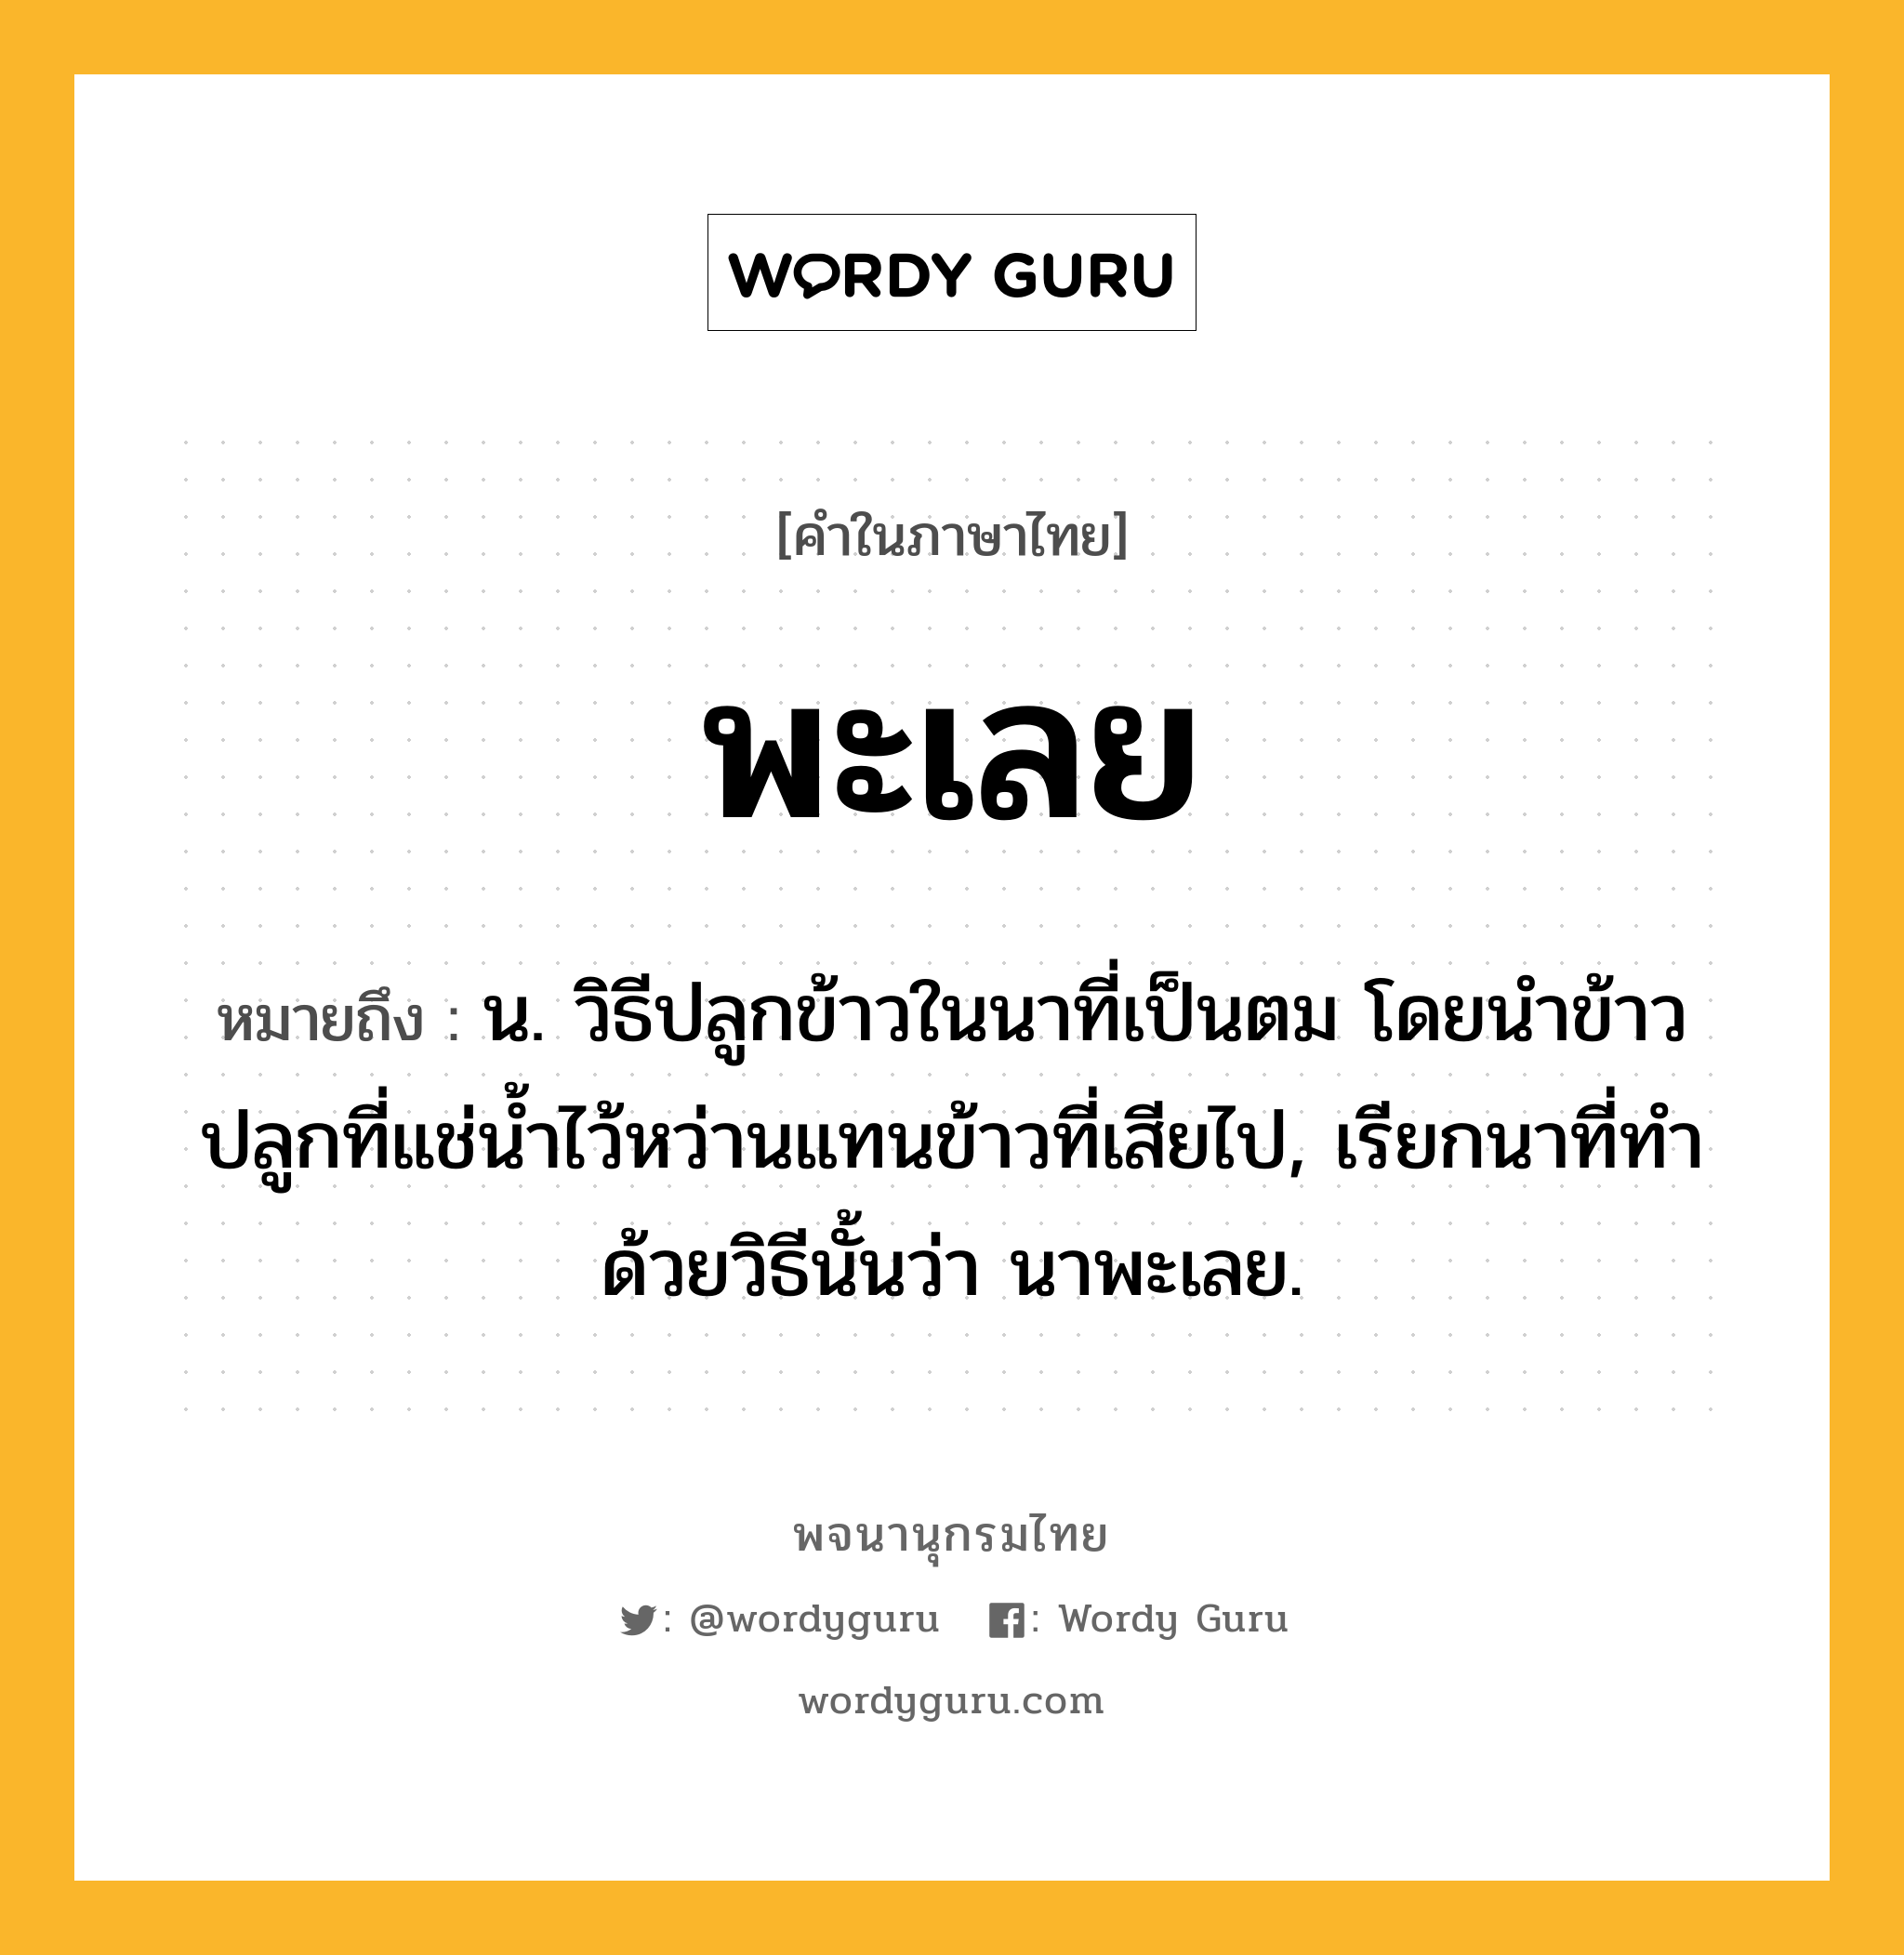 พะเลย ความหมาย หมายถึงอะไร?, คำในภาษาไทย พะเลย หมายถึง น. วิธีปลูกข้าวในนาที่เป็นตม โดยนําข้าวปลูกที่แช่นํ้าไว้หว่านแทนข้าวที่เสียไป, เรียกนาที่ทําด้วยวิธีนั้นว่า นาพะเลย.